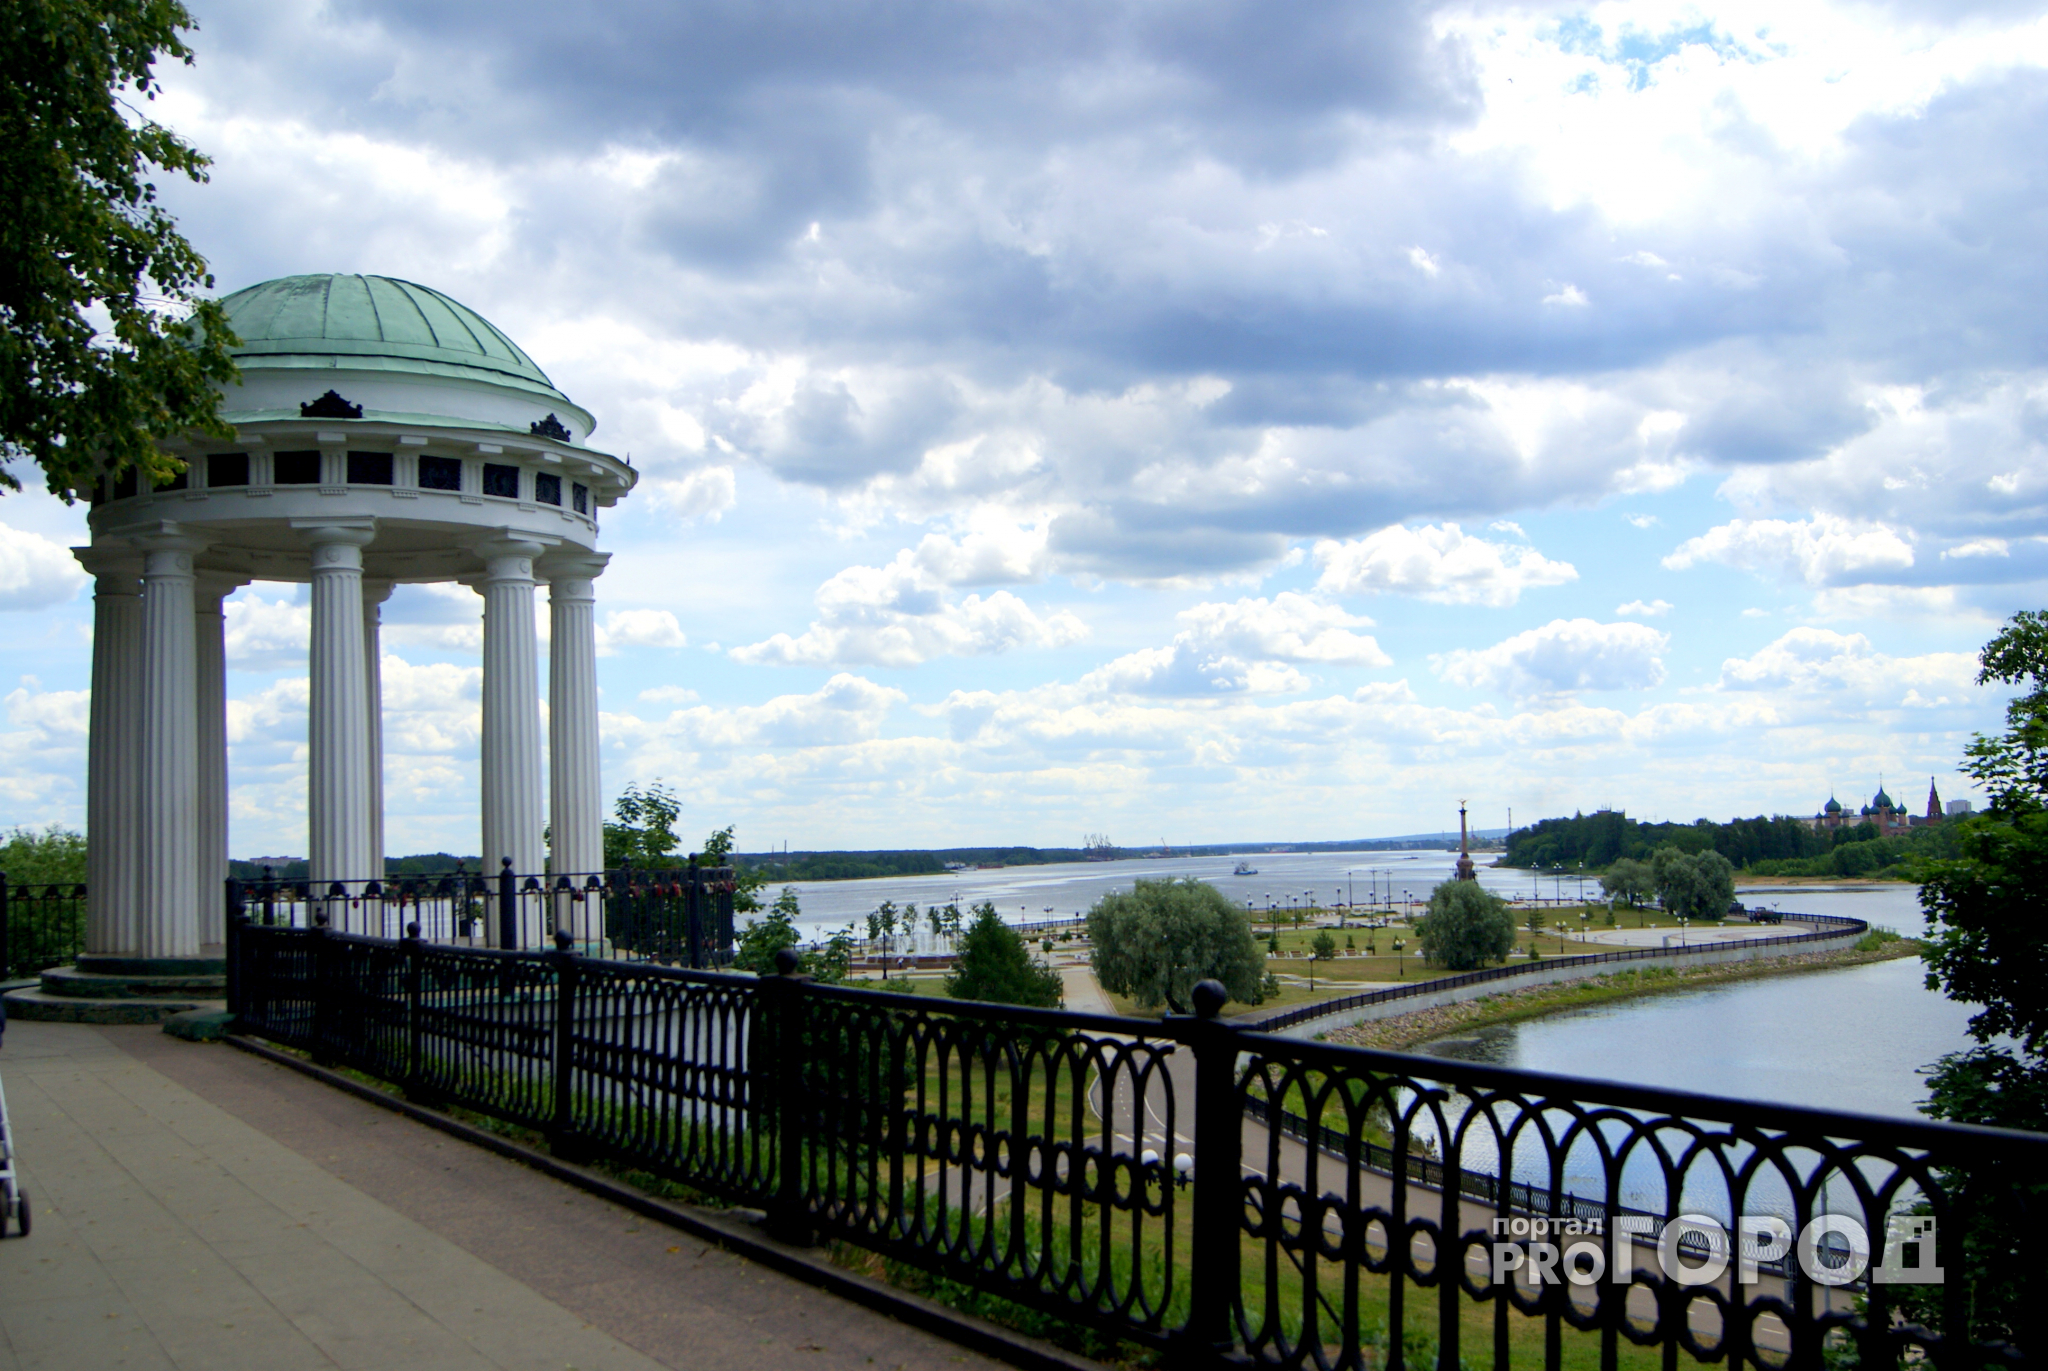 Ярославль стал одним из самых популярных городов России для путешествий